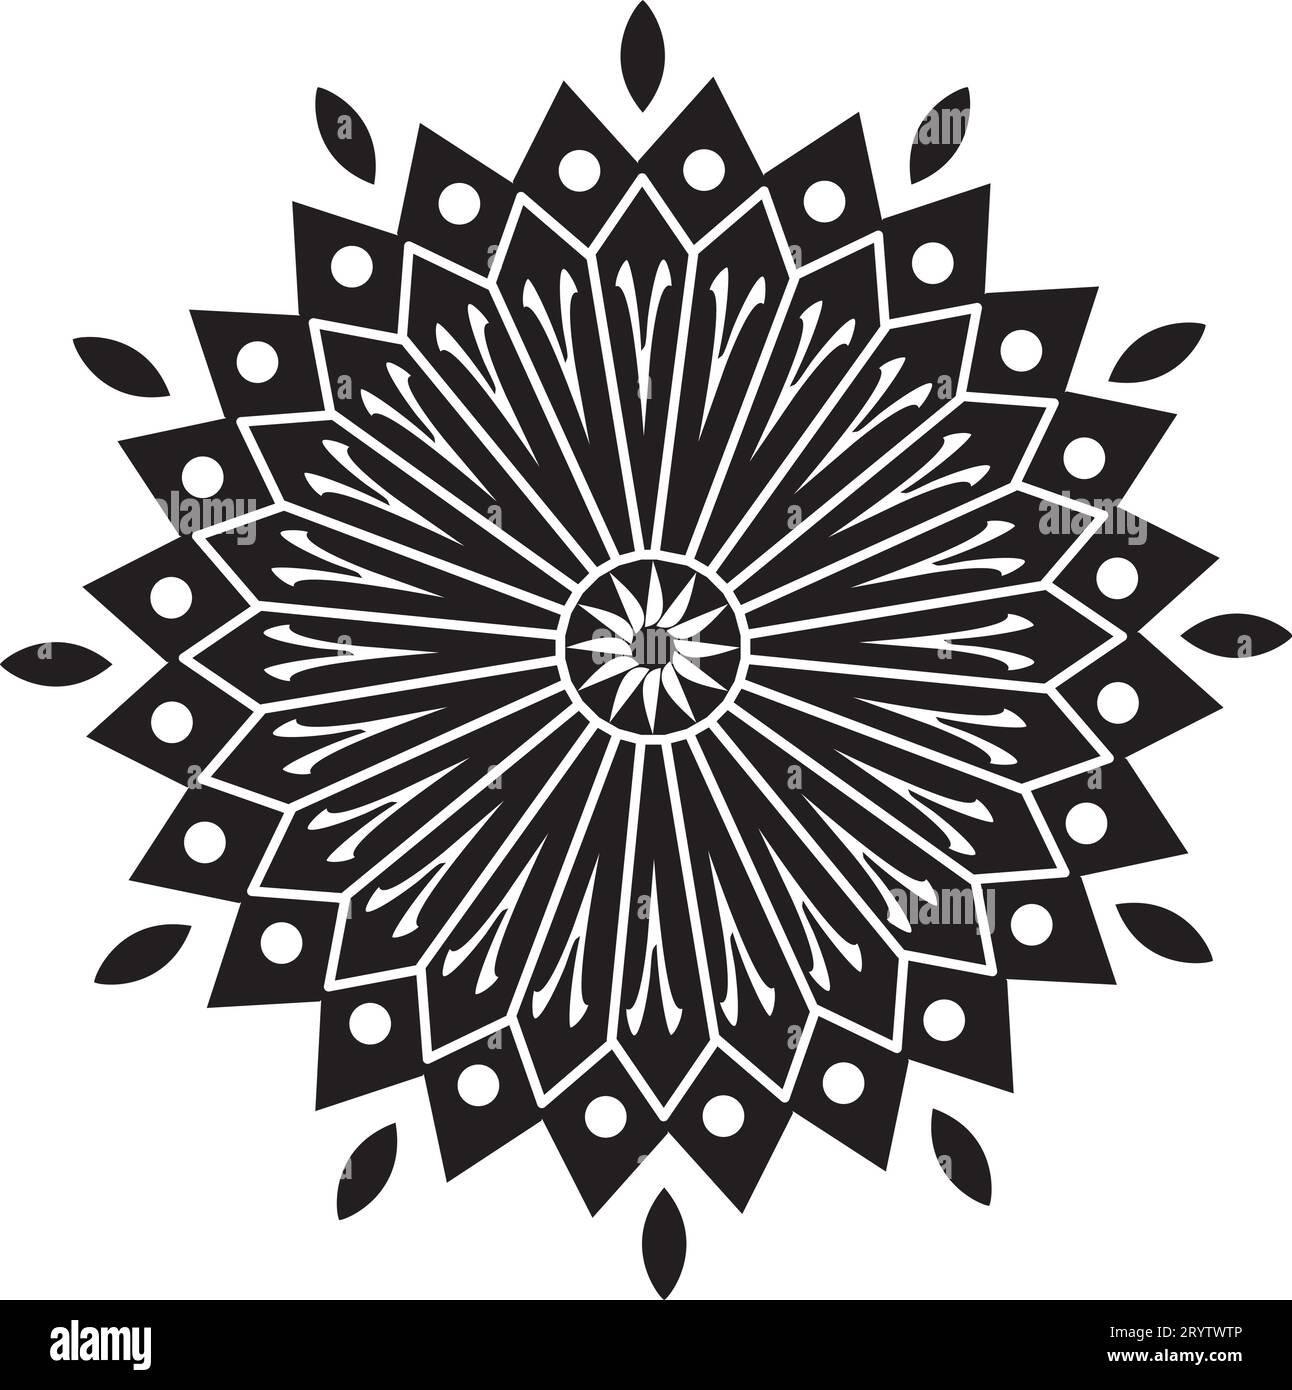 Mandala - Blume Stern Sonne Illustration, Natur, Energie Kreis Runde schöne Symmetrie Harmonie Symbol in Schwarz und weiß Stock Vektor